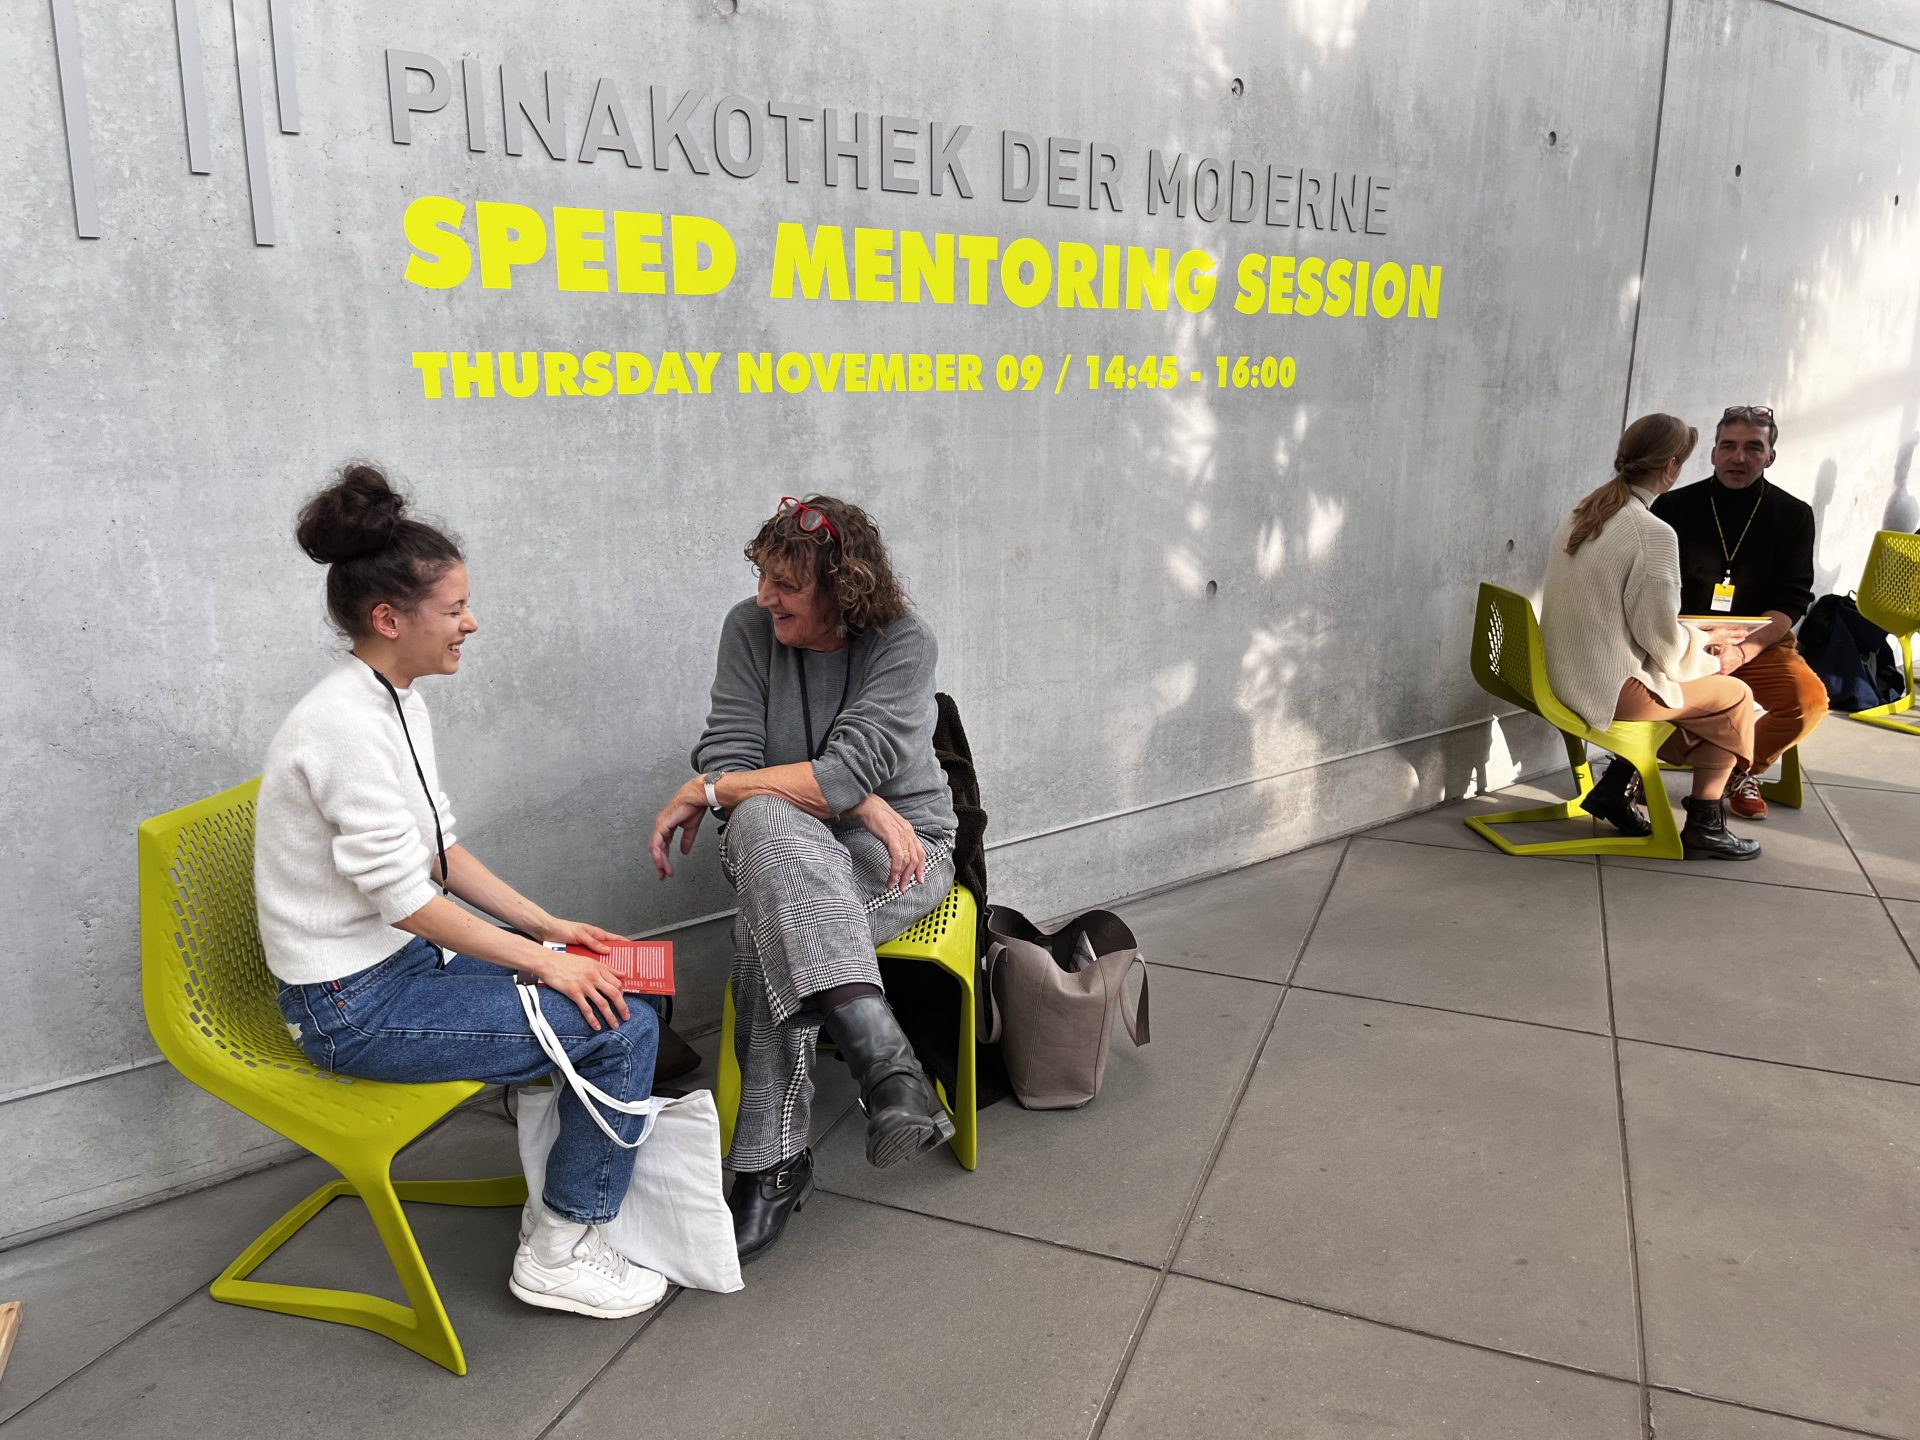 Zwei Teilnehmerinnen unterhalten sich auf der Terrasse der Pinakothek der Moderne. Sie sitzen auf hellgrünen Stühlen. Auf der Betonwand im Hintergrund steht in der Schriftart der Veranstaltung "Speed Monitoring Session" unter der Aufschrift Pinakothek der Moderne. Rechts sitzen zwei weitere Personen an der Wand.